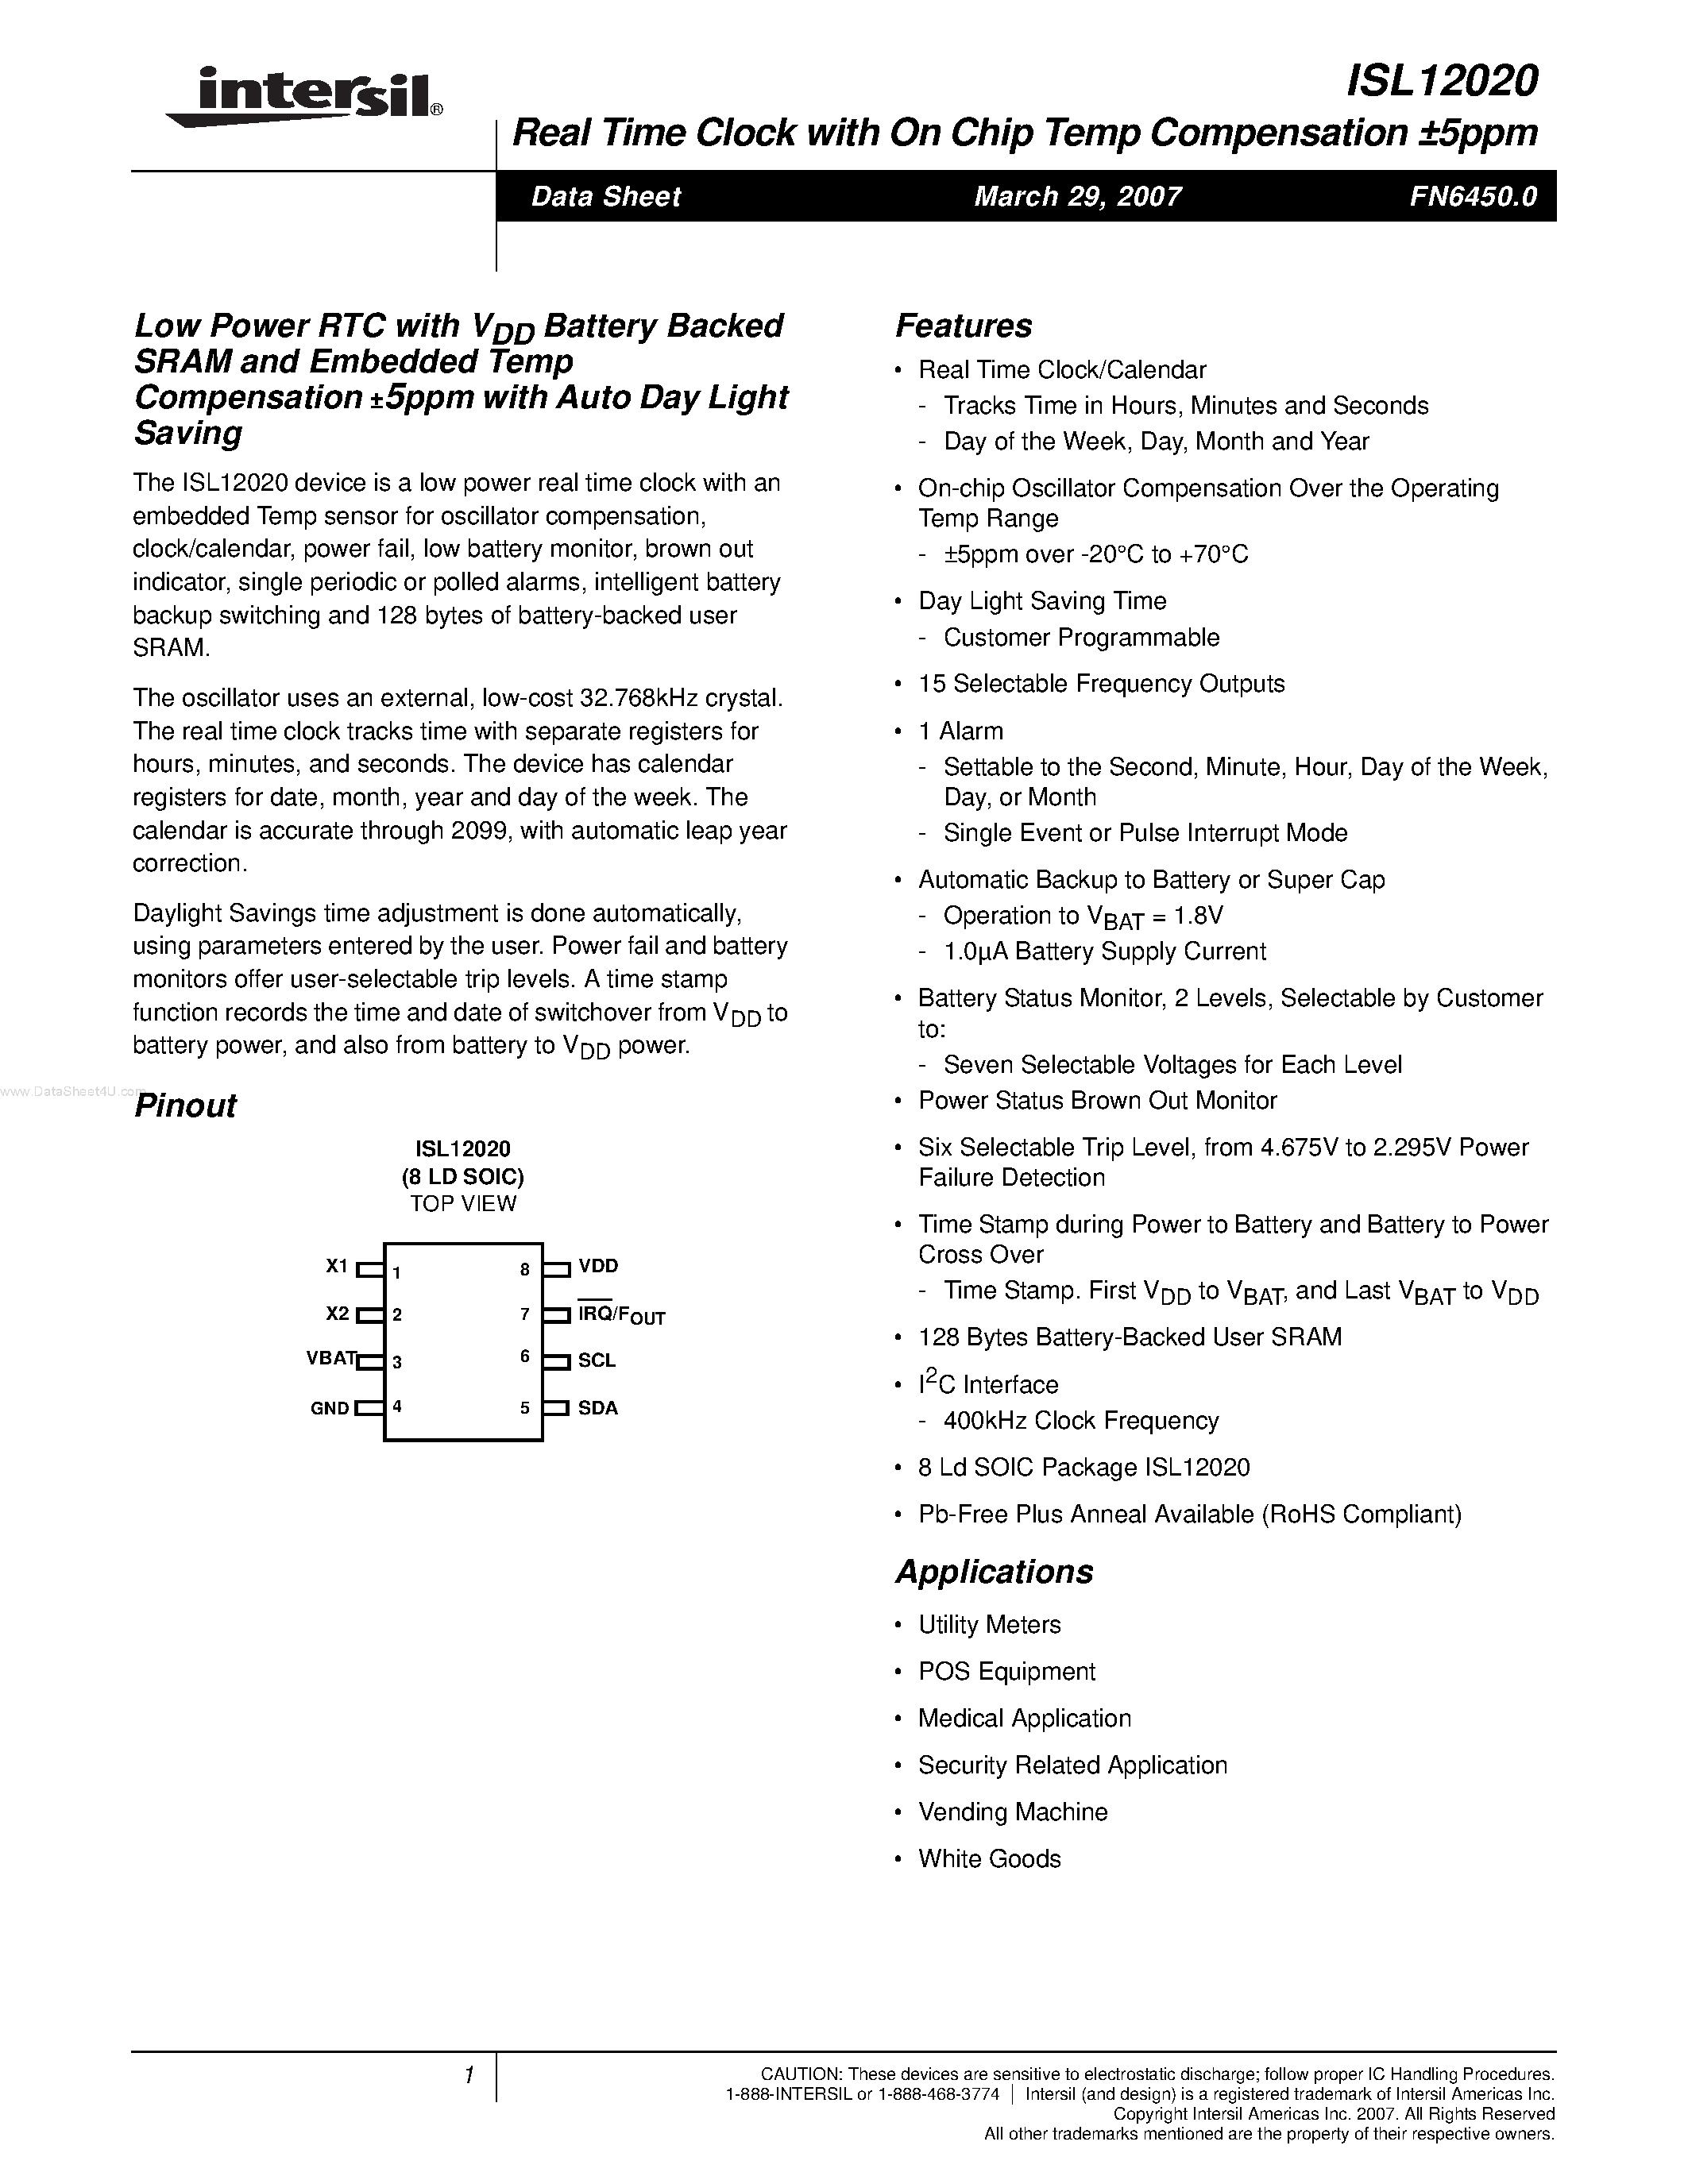 Даташит ISL12020 - Low Power RTC страница 1